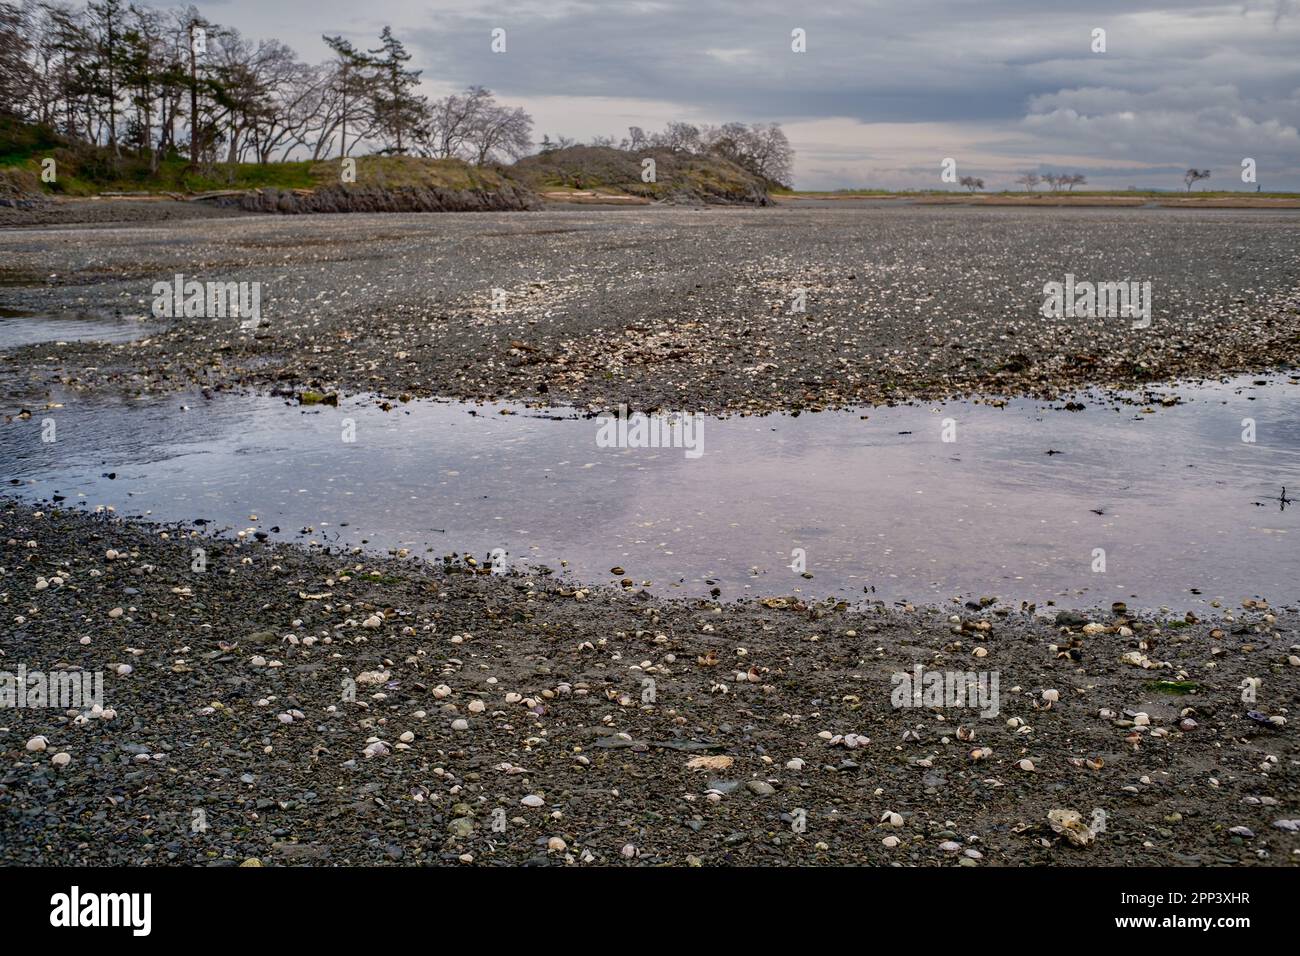 Les coquillages et les roches sont exposés dans un lagon d'eau salée à marée basse dans le lagon de Piper, sur l'île de Vancouver, au Canada. Banque D'Images